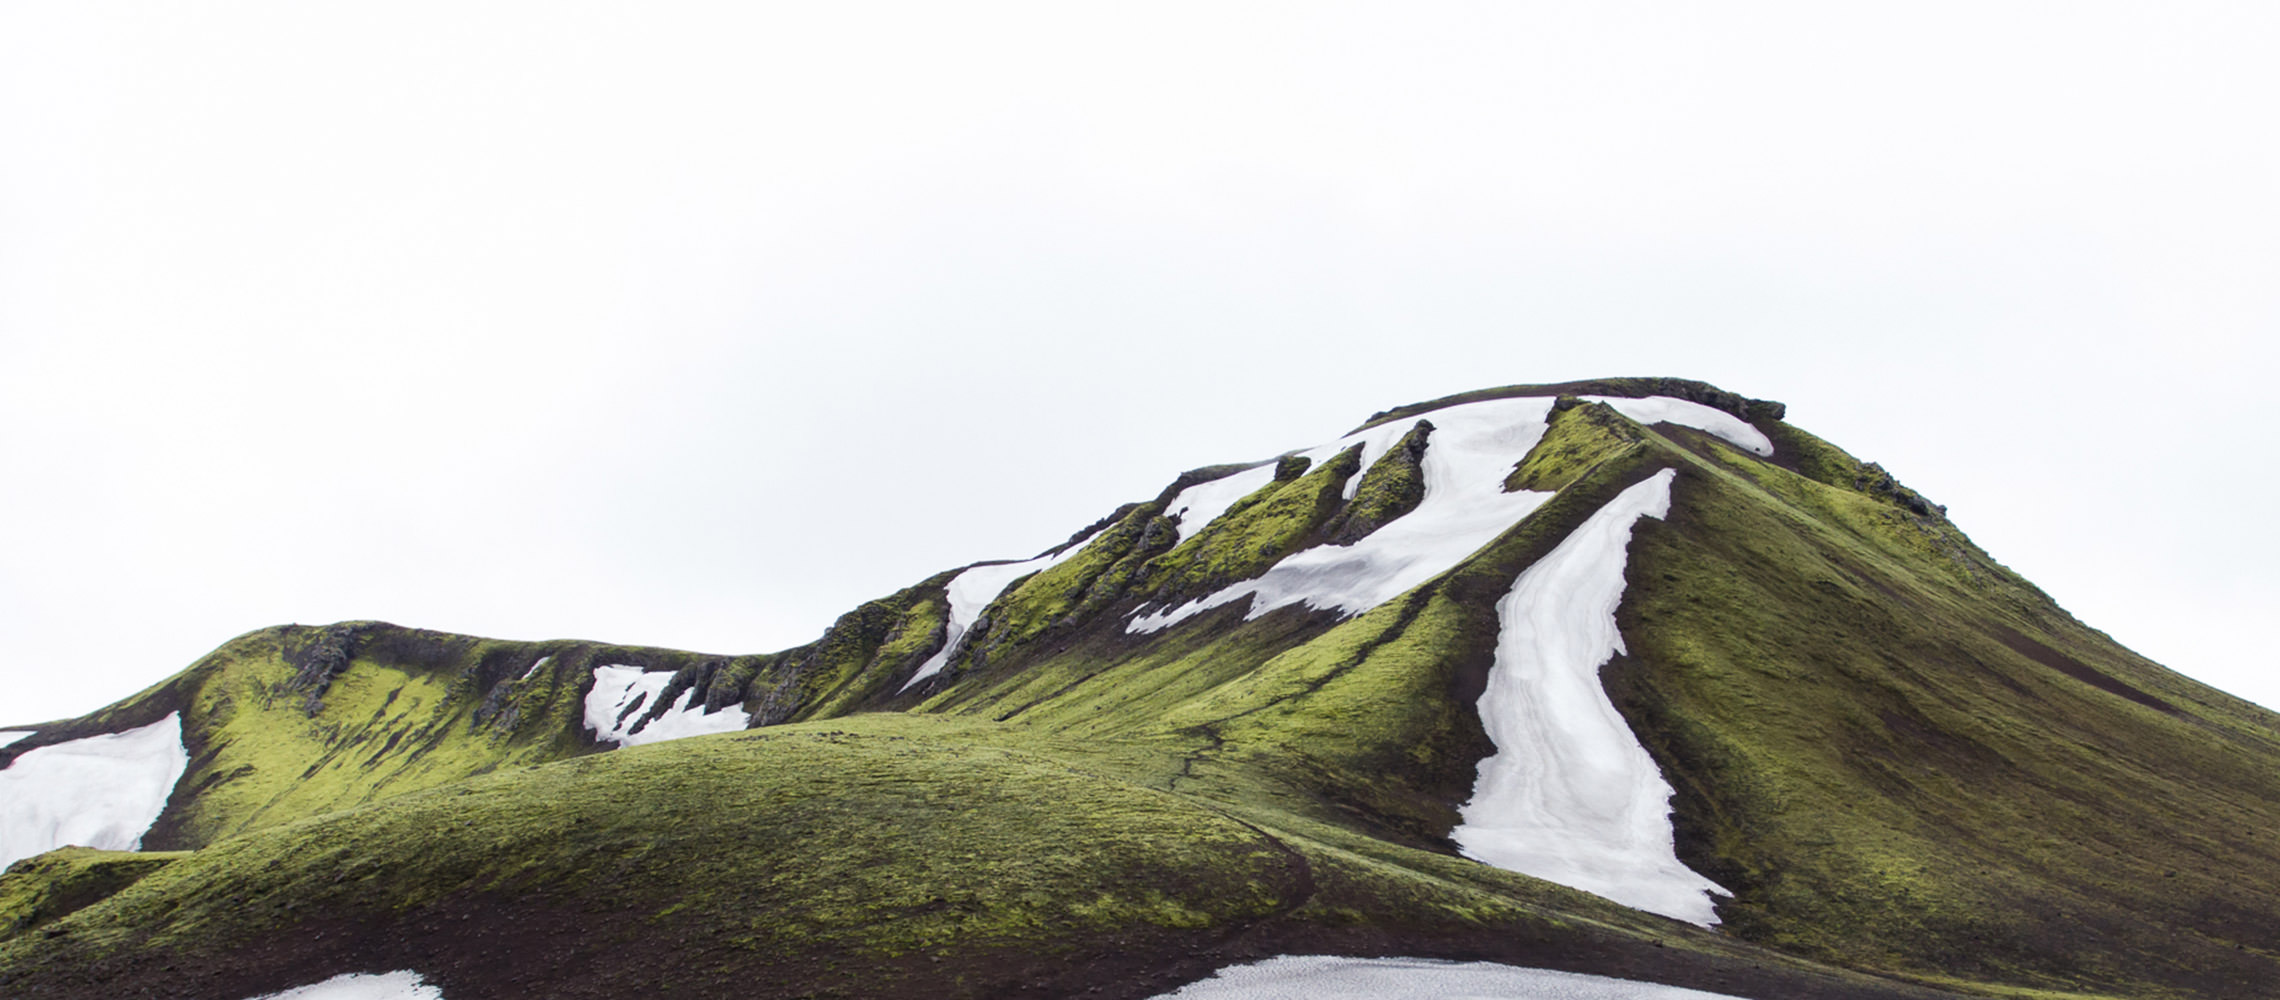 Verde paesaggio di montagna con ghiacciai isolati.